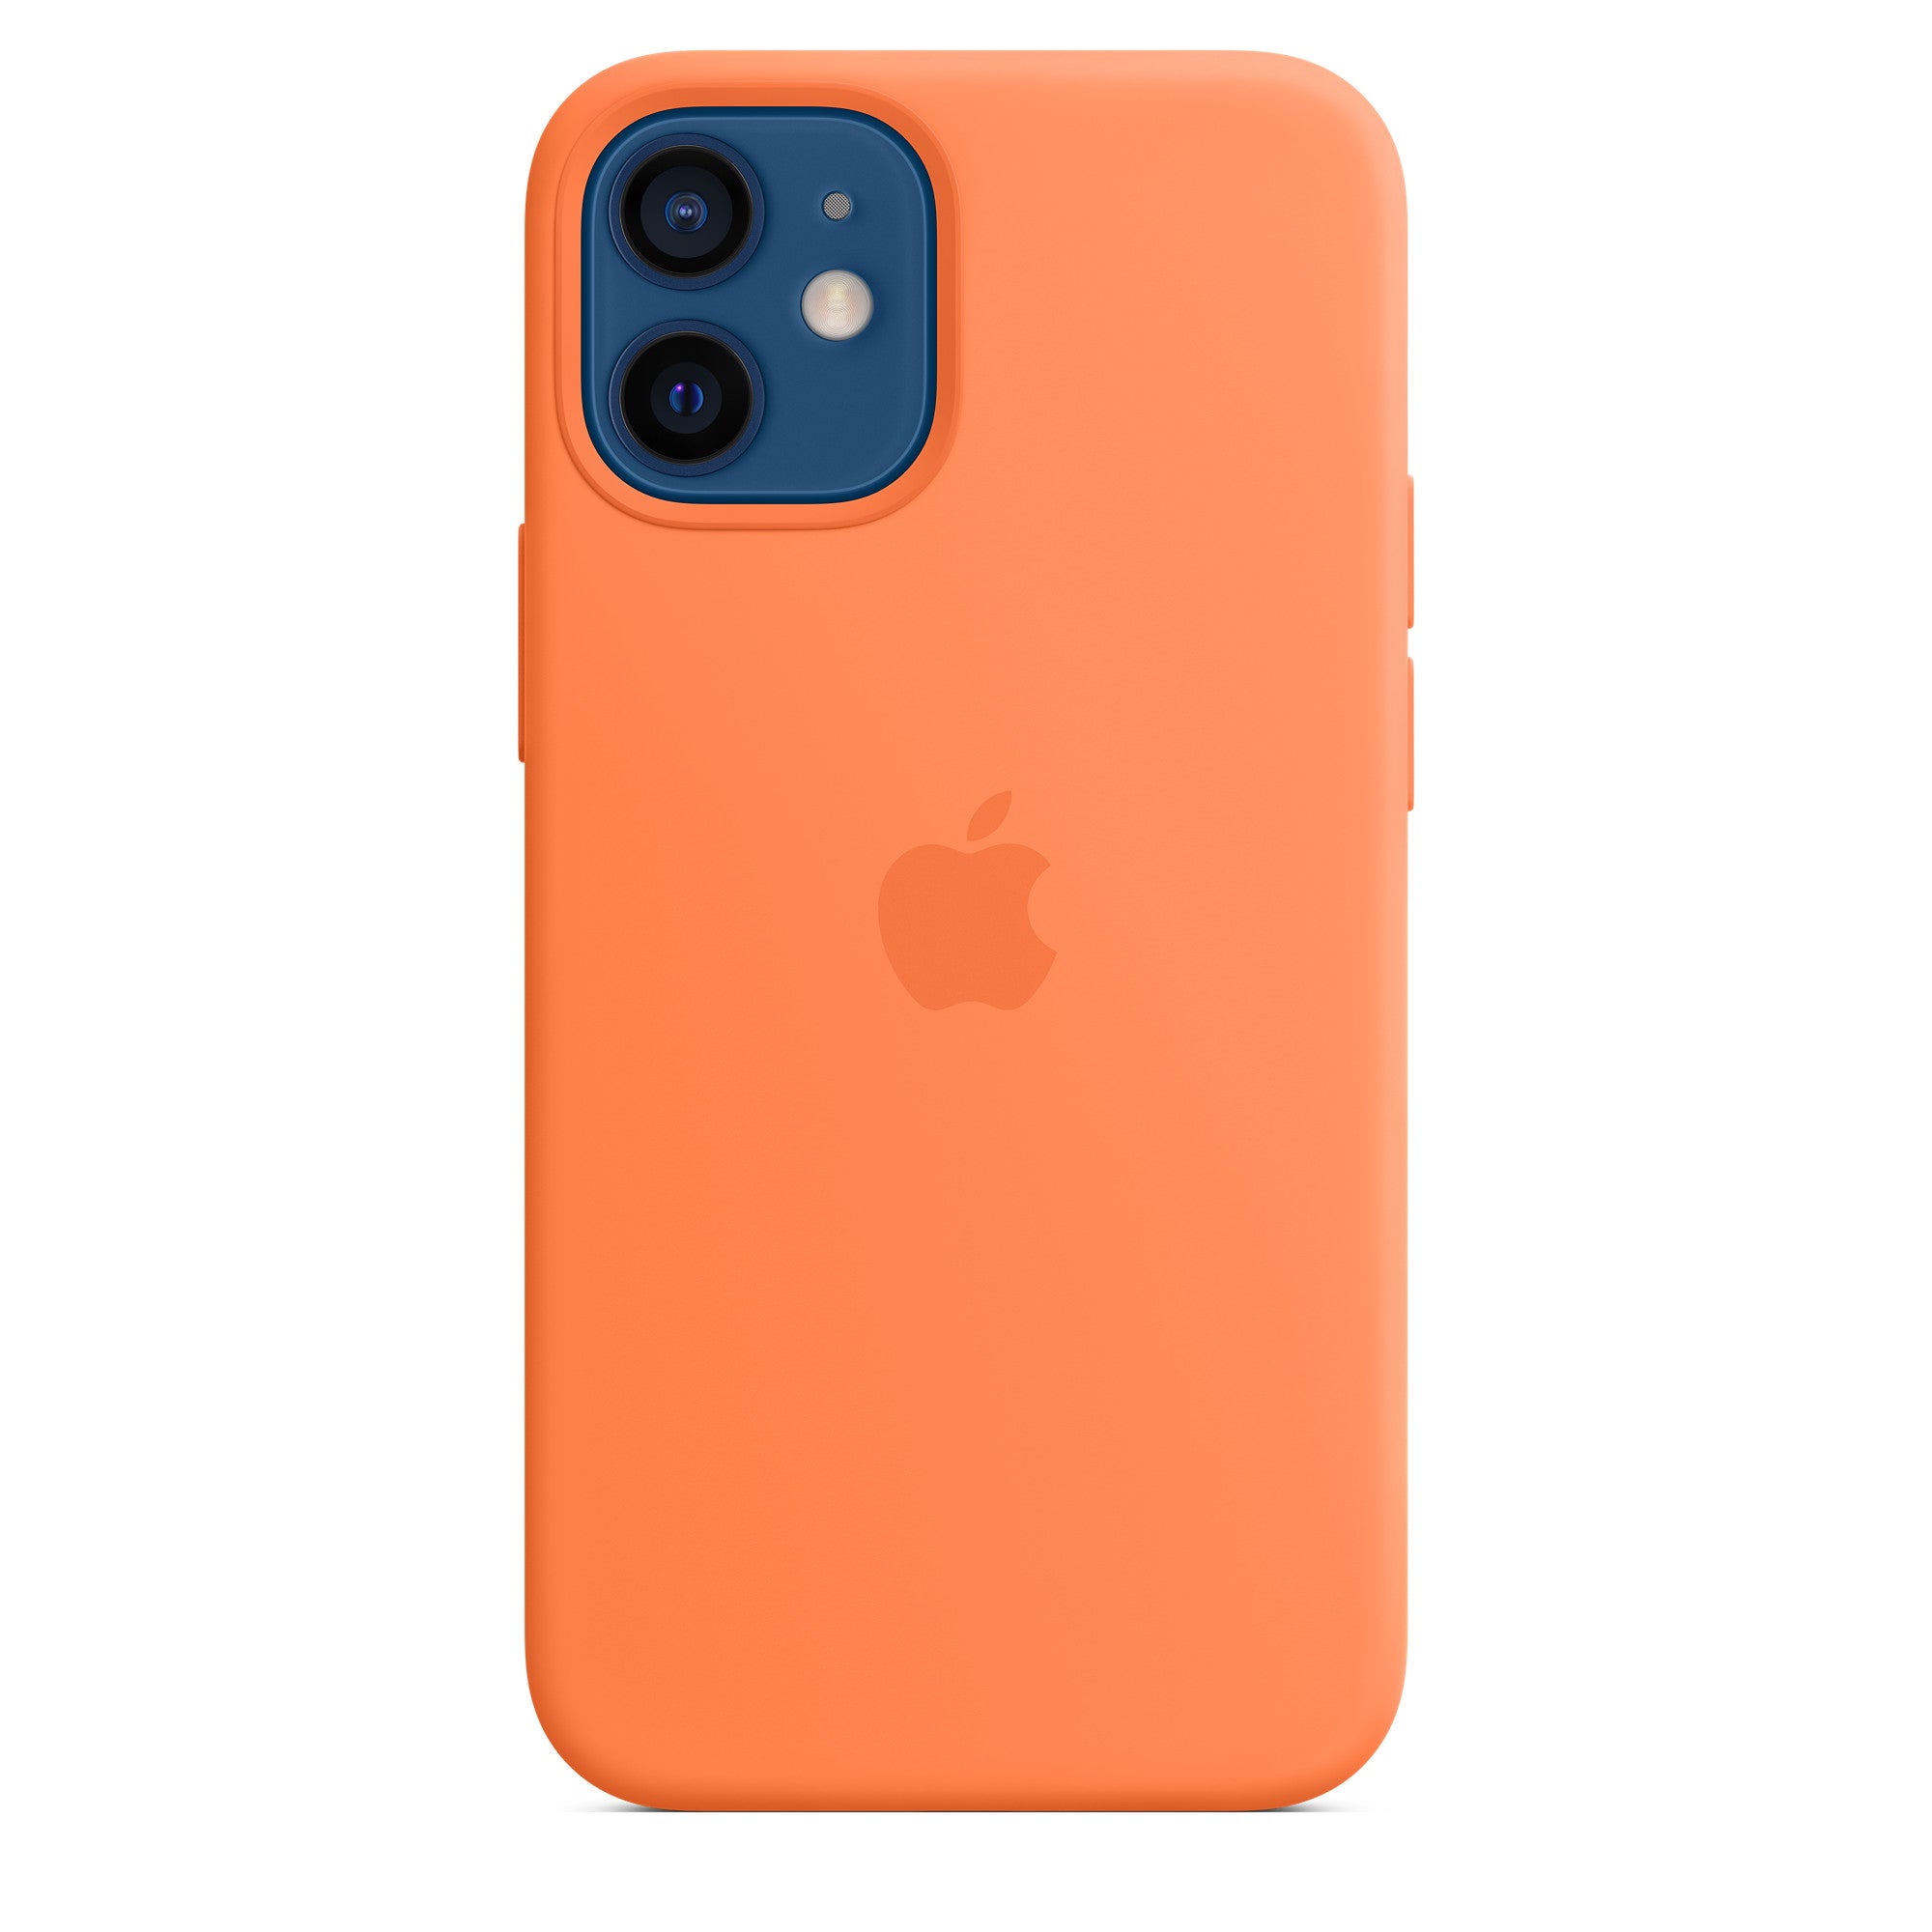 Apple iPhone 12 Mini Silicone Case Kumquat Kumquat New - Sealed